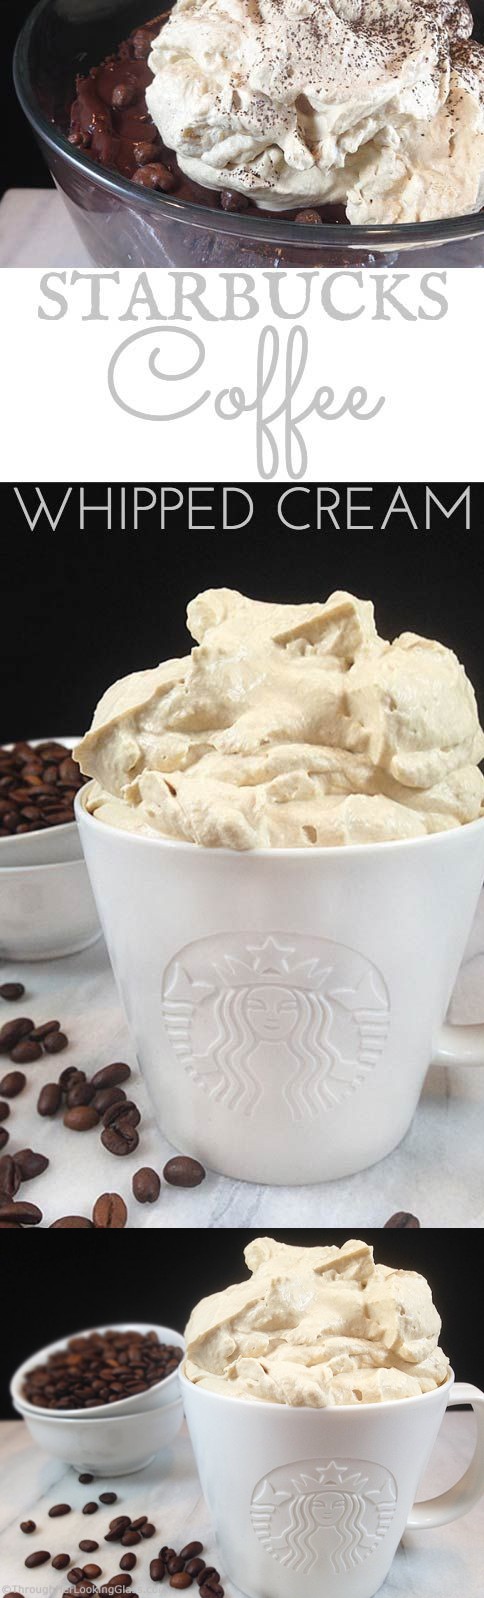 Starbucks Coffee Whipped Cream